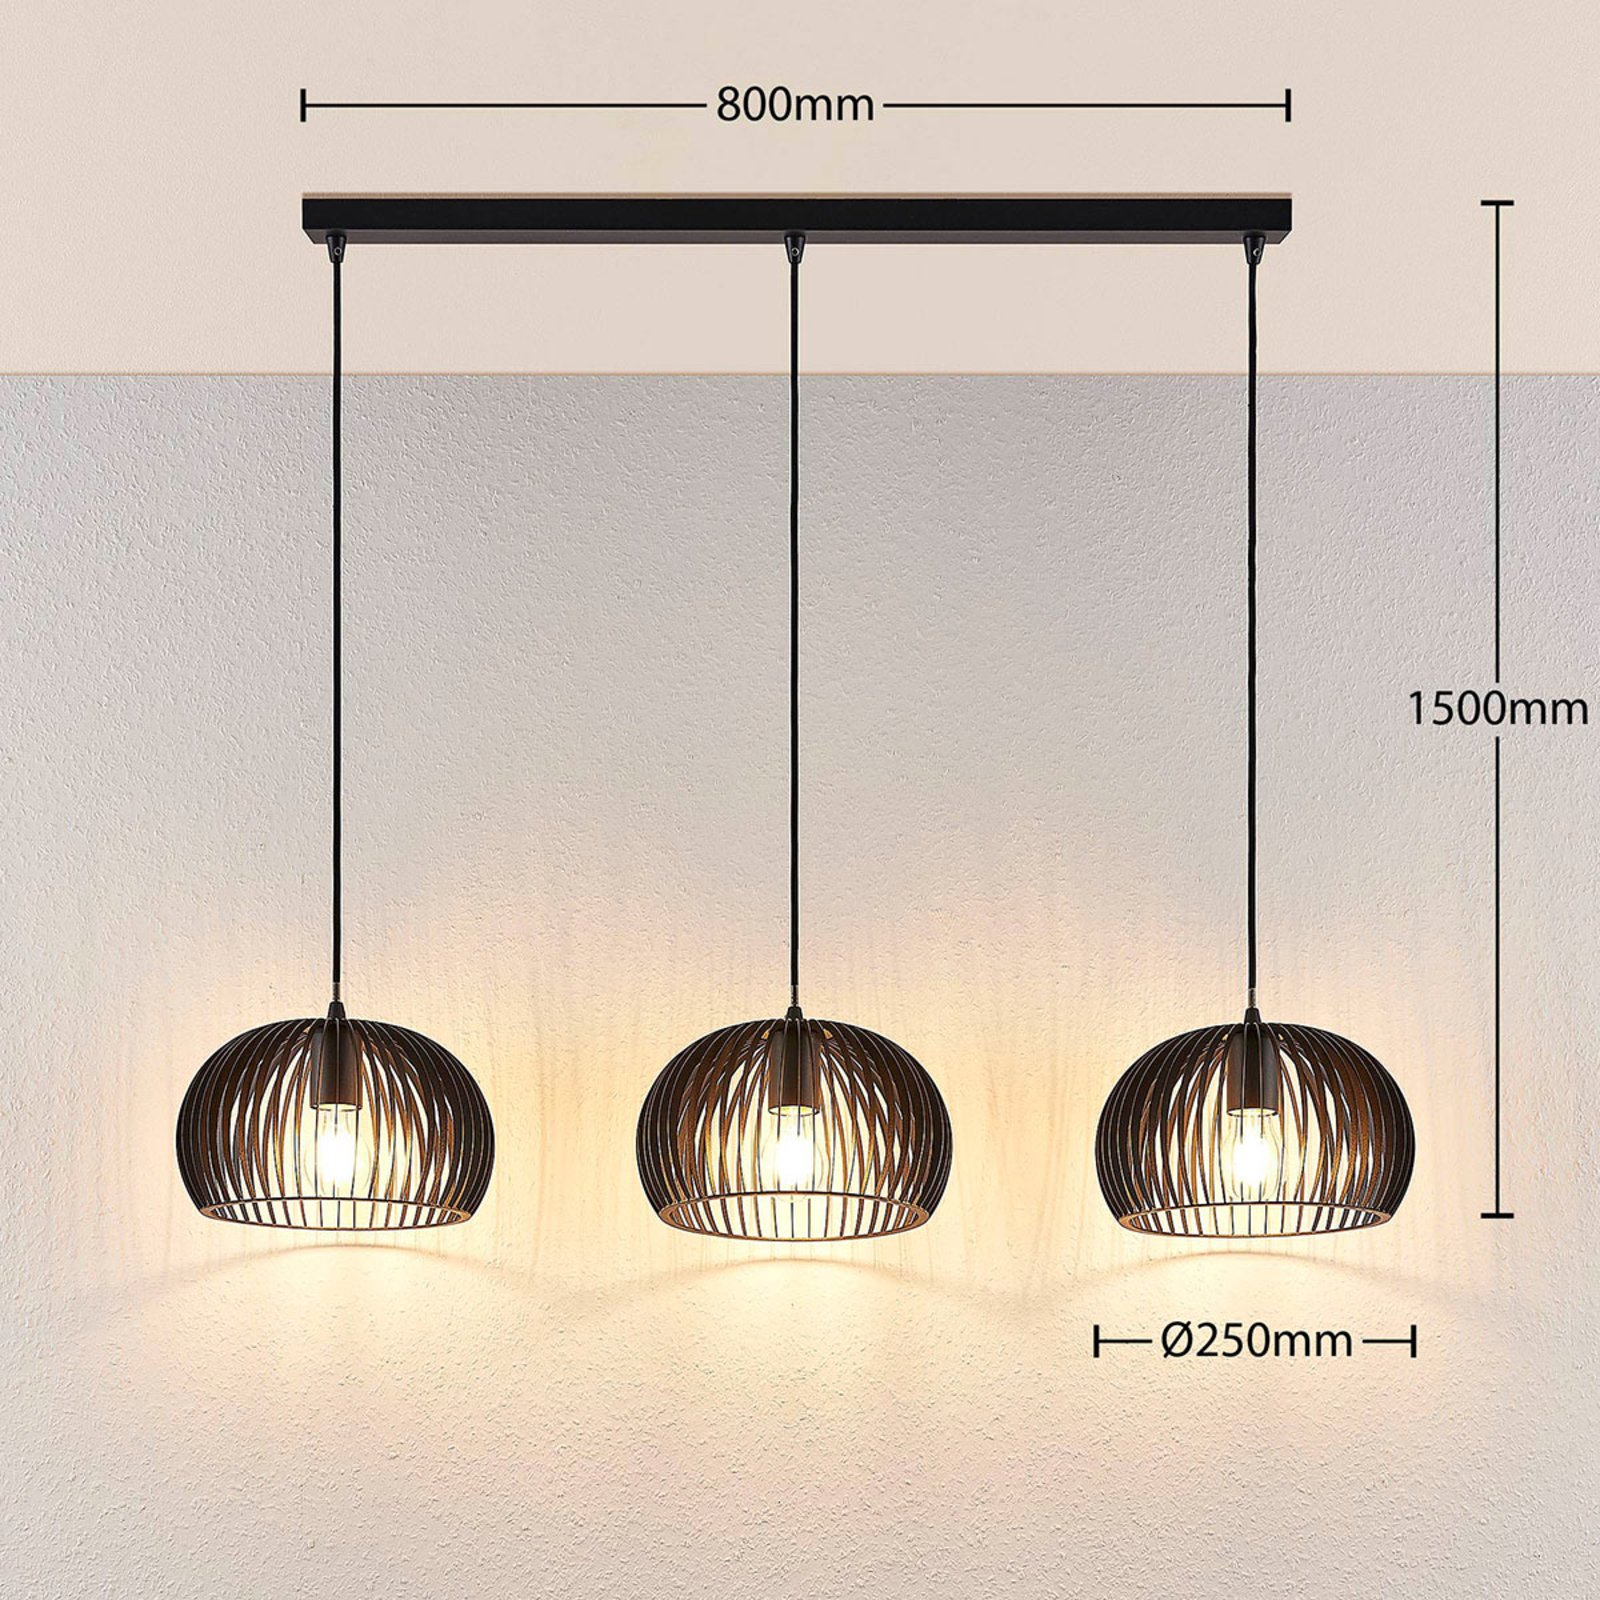 Hanglamp Jusra gemaakt van zwart metaal, 3-lamps